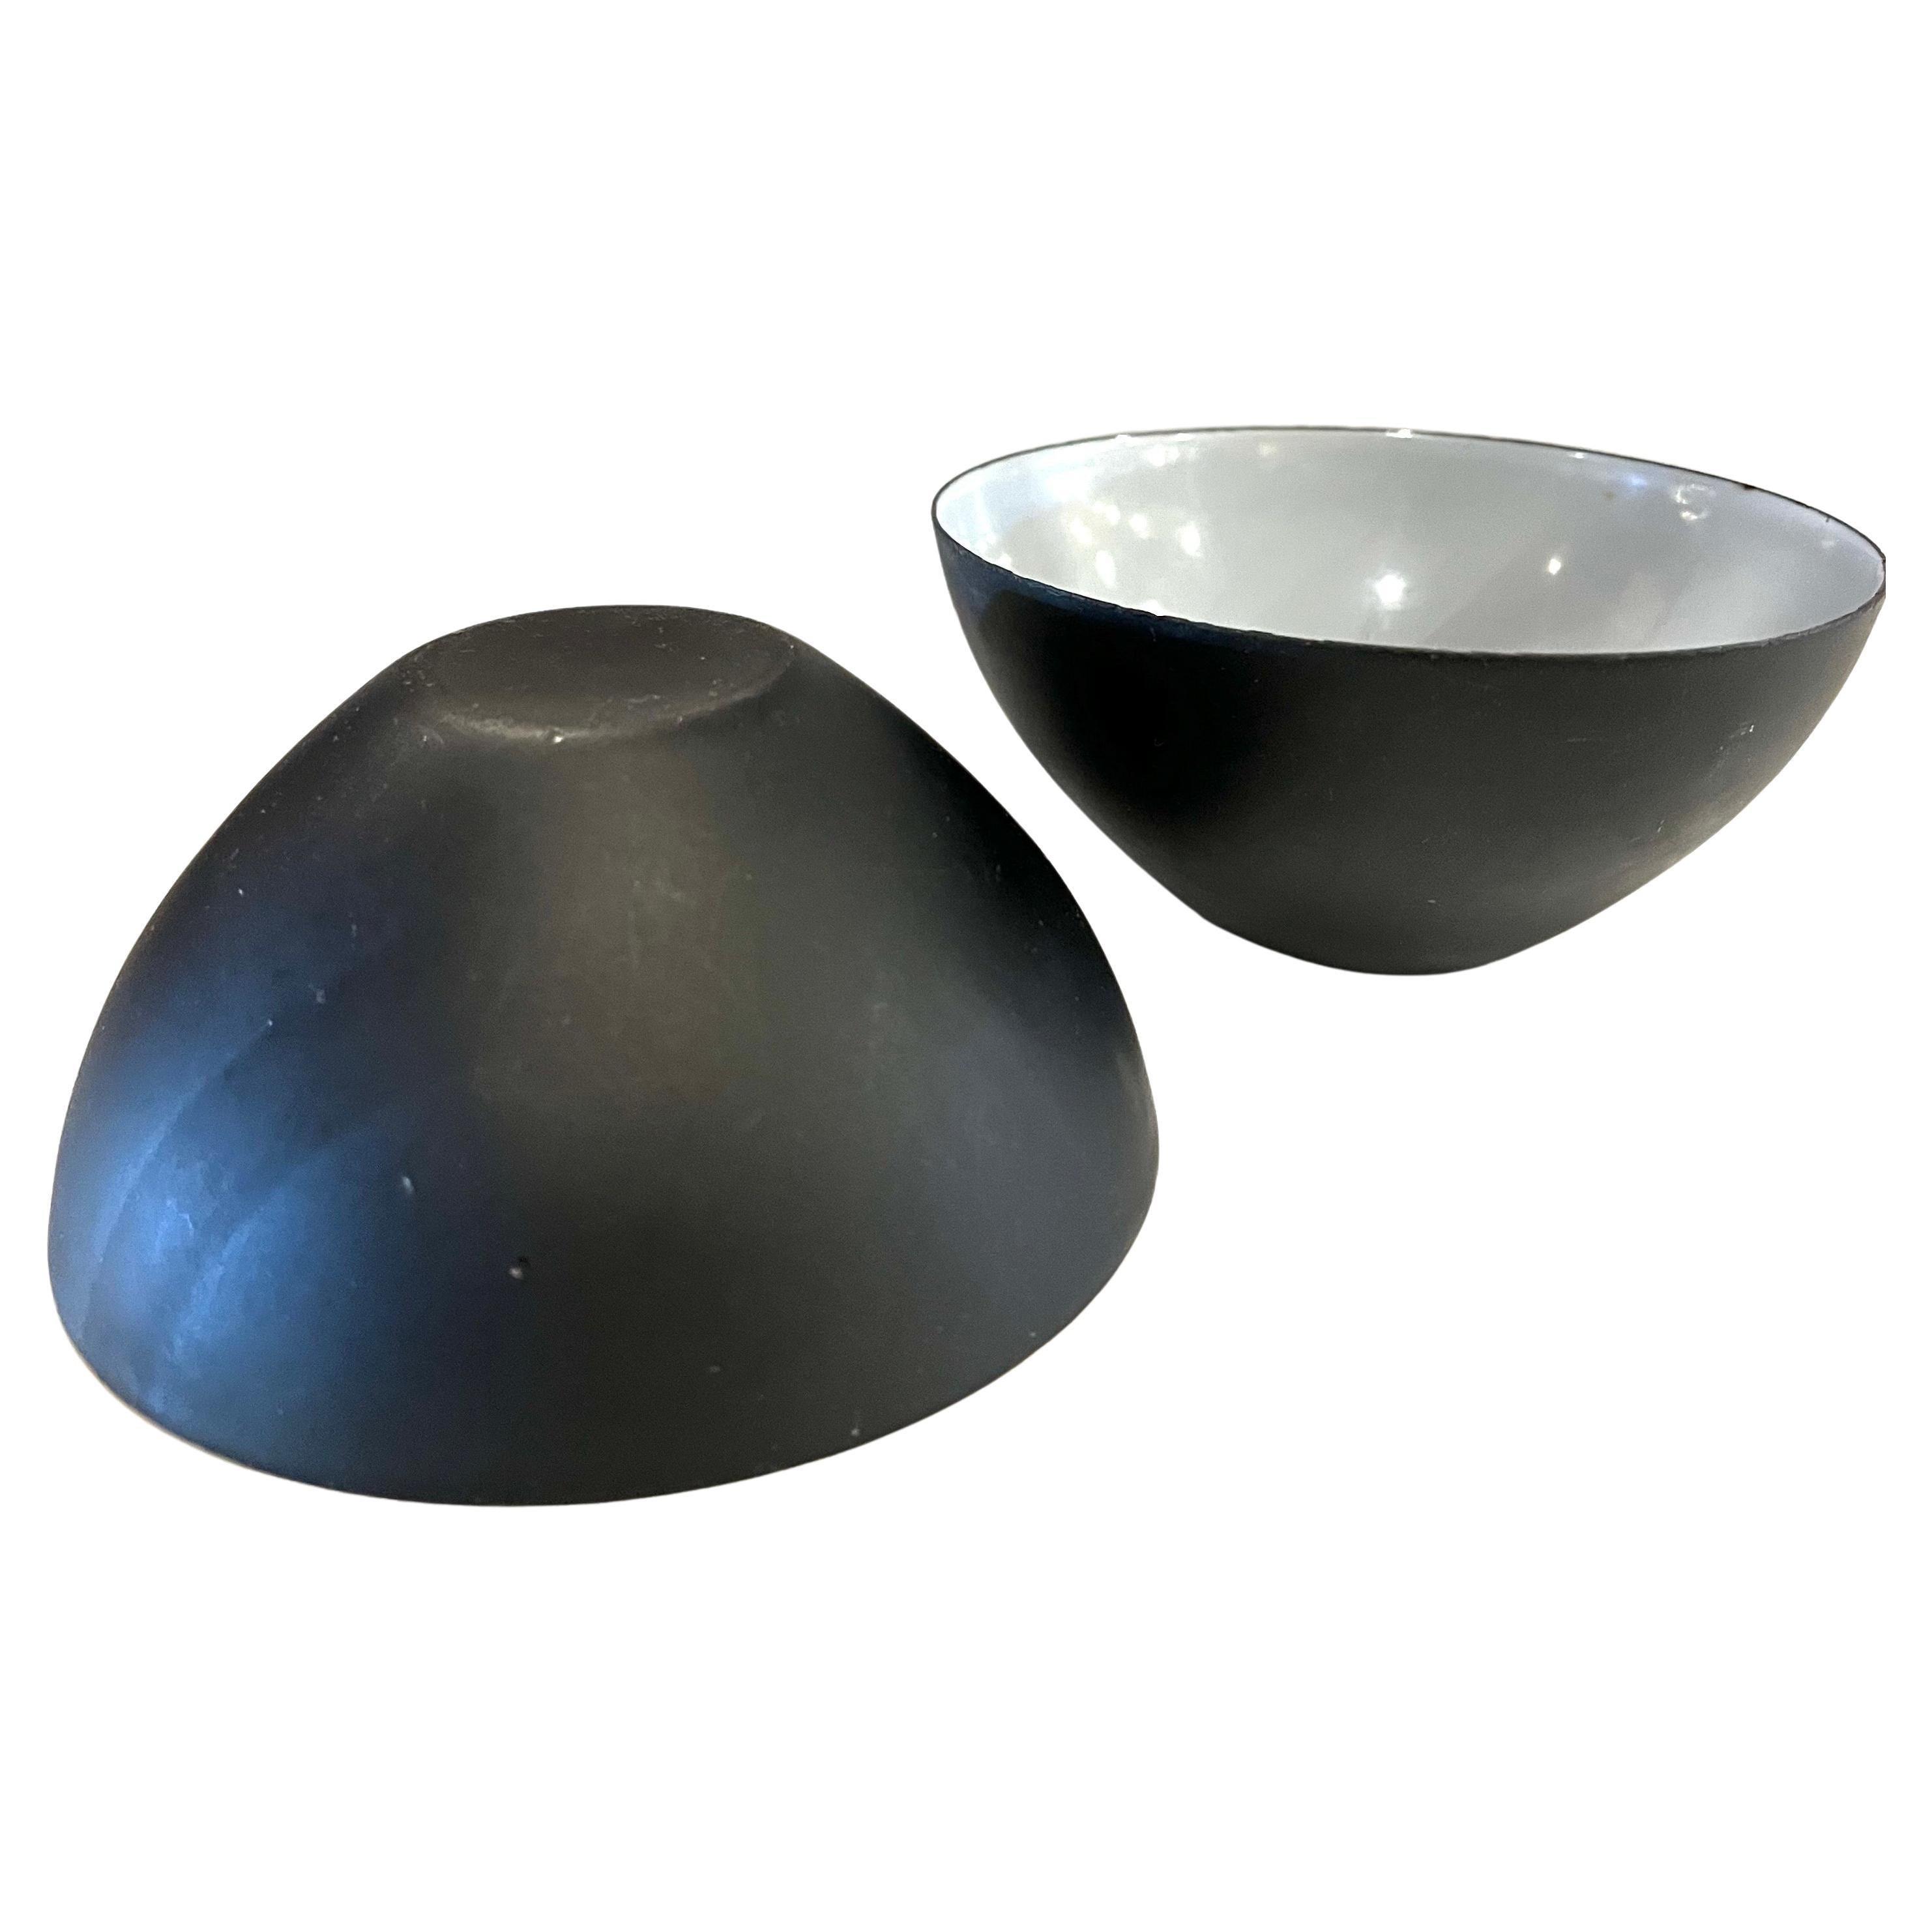 Belle couleur et bon état pour cette paire de bols vintage en métal émaillé Krenit, conçus par Herbert Krenchel pour Torben Orskov, vers les années 1950, en très bon état. L'extérieur est légèrement usé et l'intérieur est gris clair.